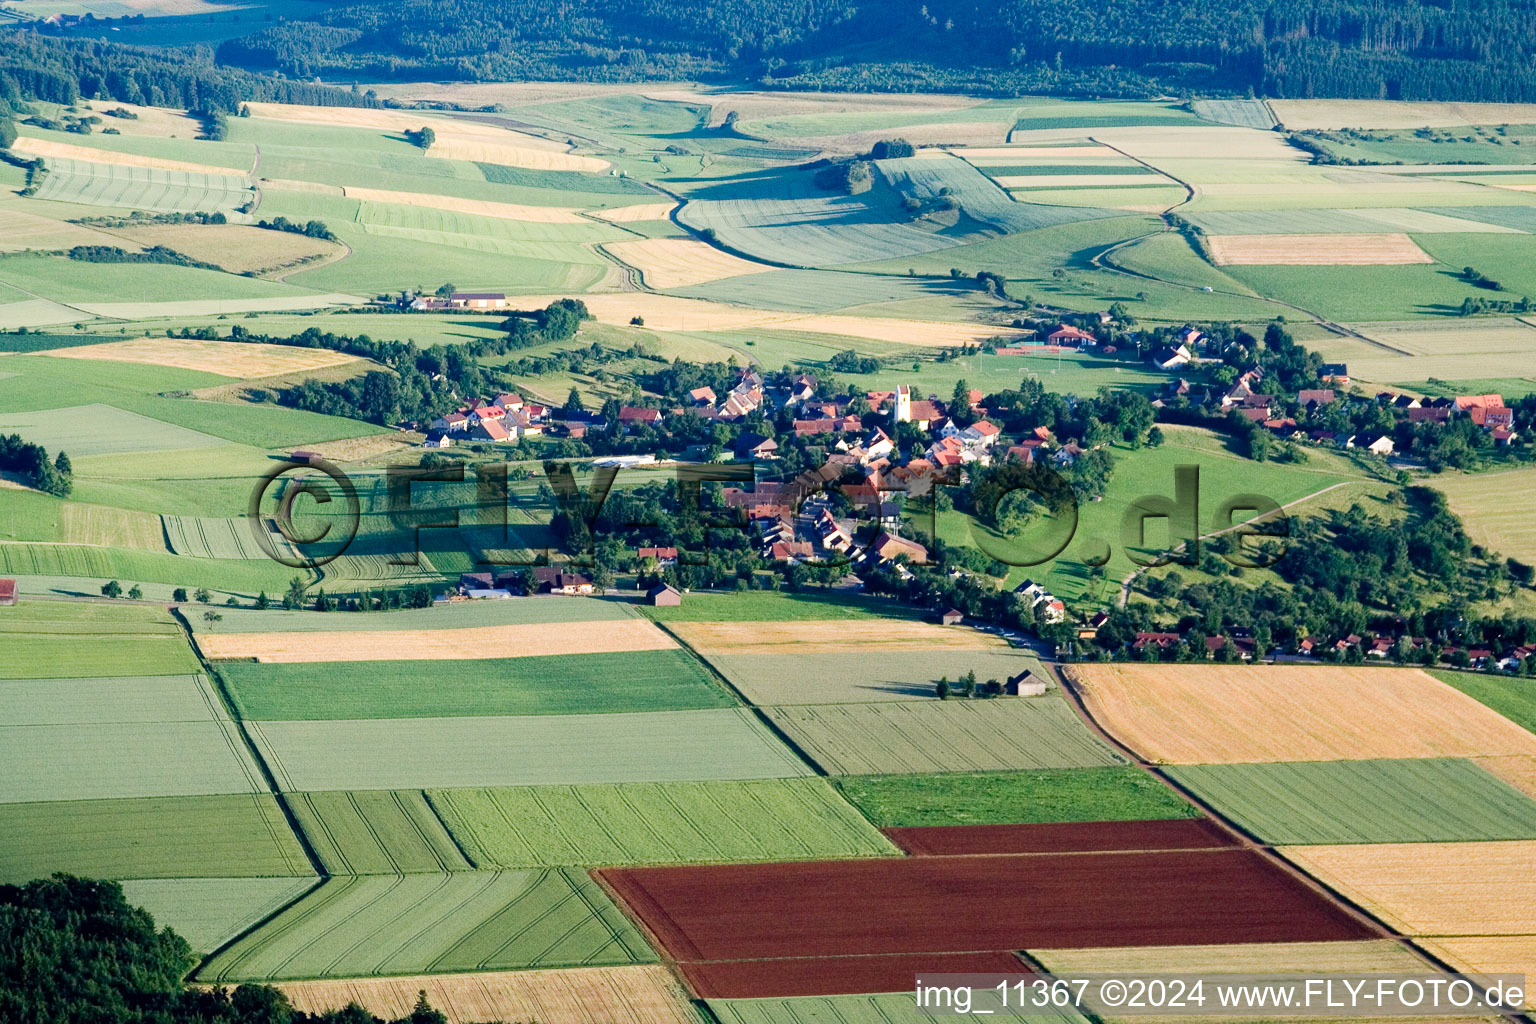 Vue aérienne de Champs agricoles et surfaces utilisables à Gunningen dans le département Bade-Wurtemberg, Allemagne